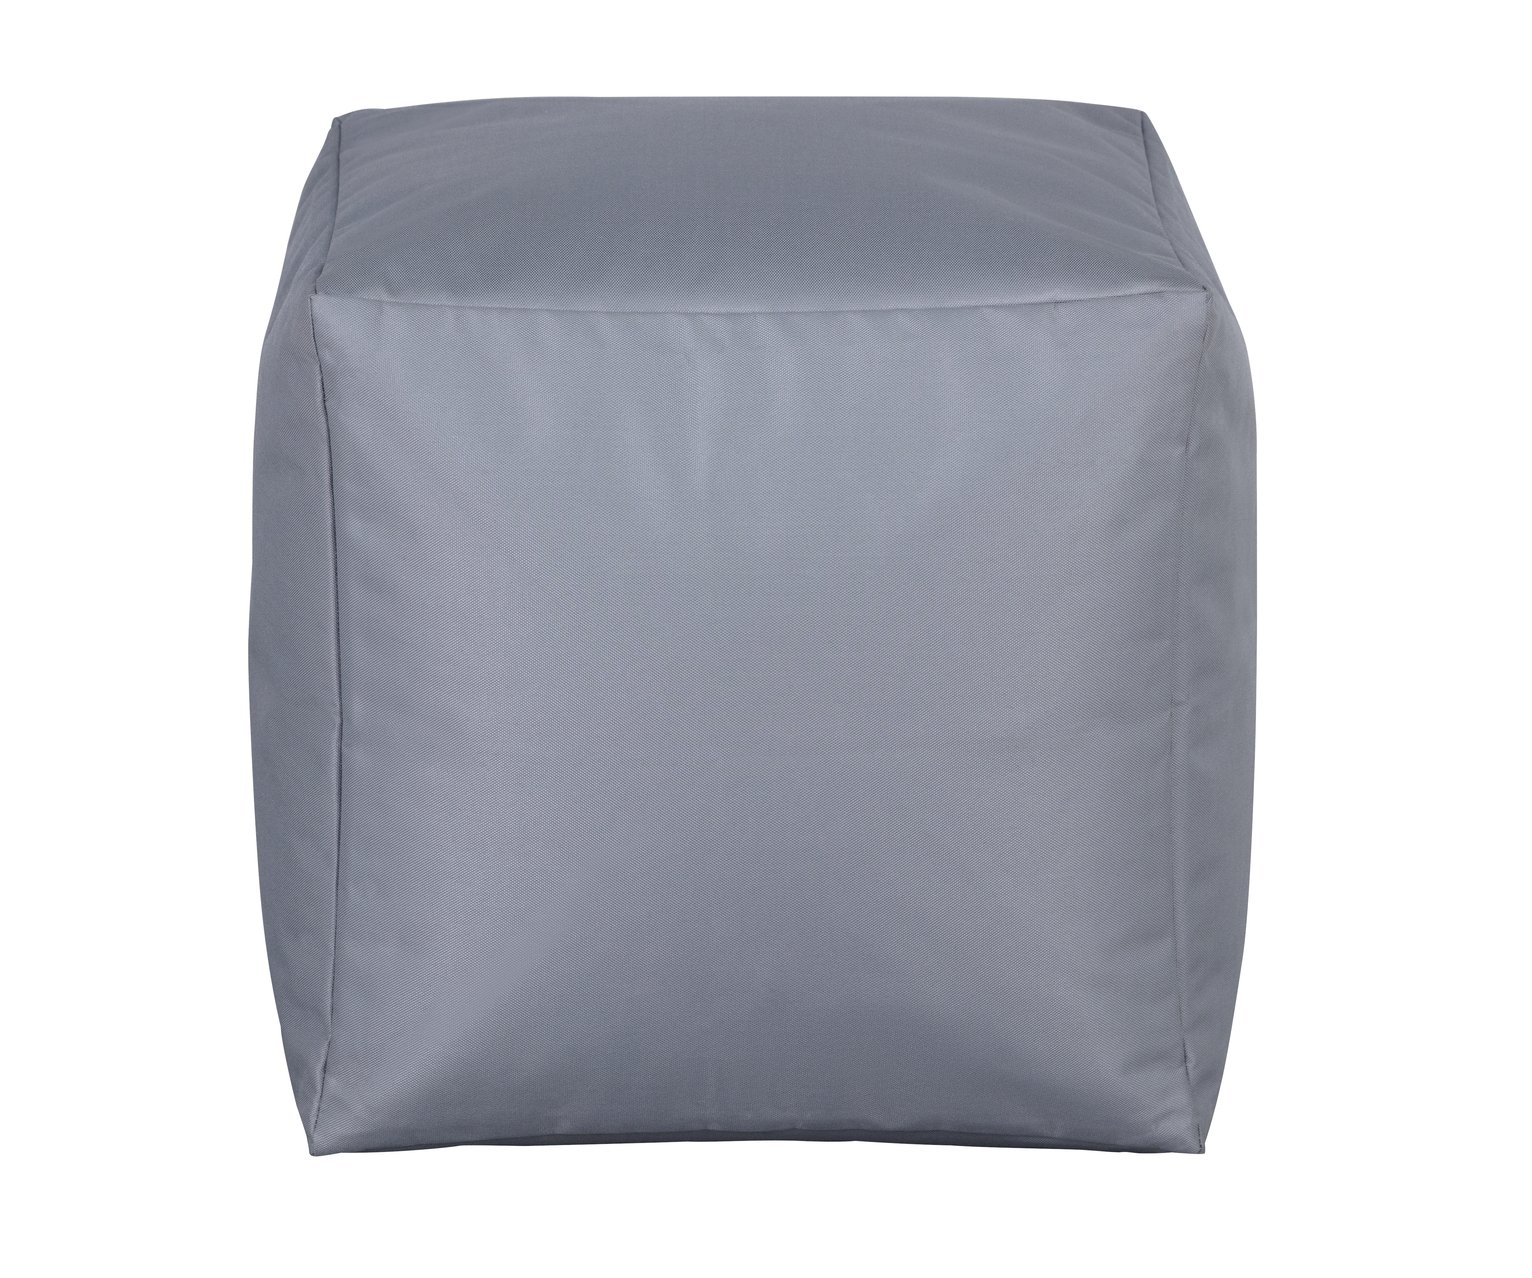 Argos Home Cube Grey Bean Bag Review